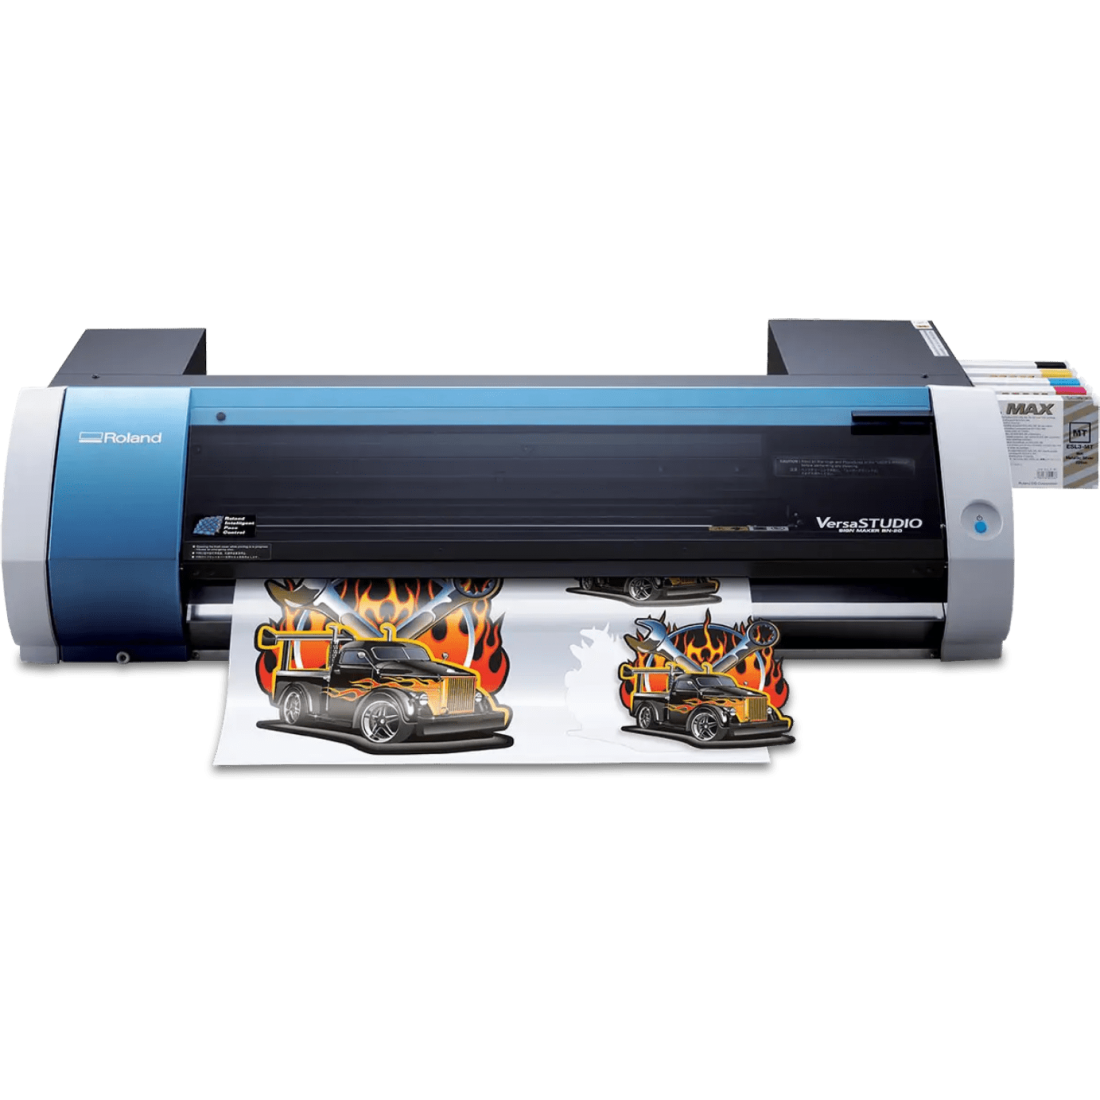 impresora-y-cortadora-versastudio-roland-bn-20-y-bn-20a-sag